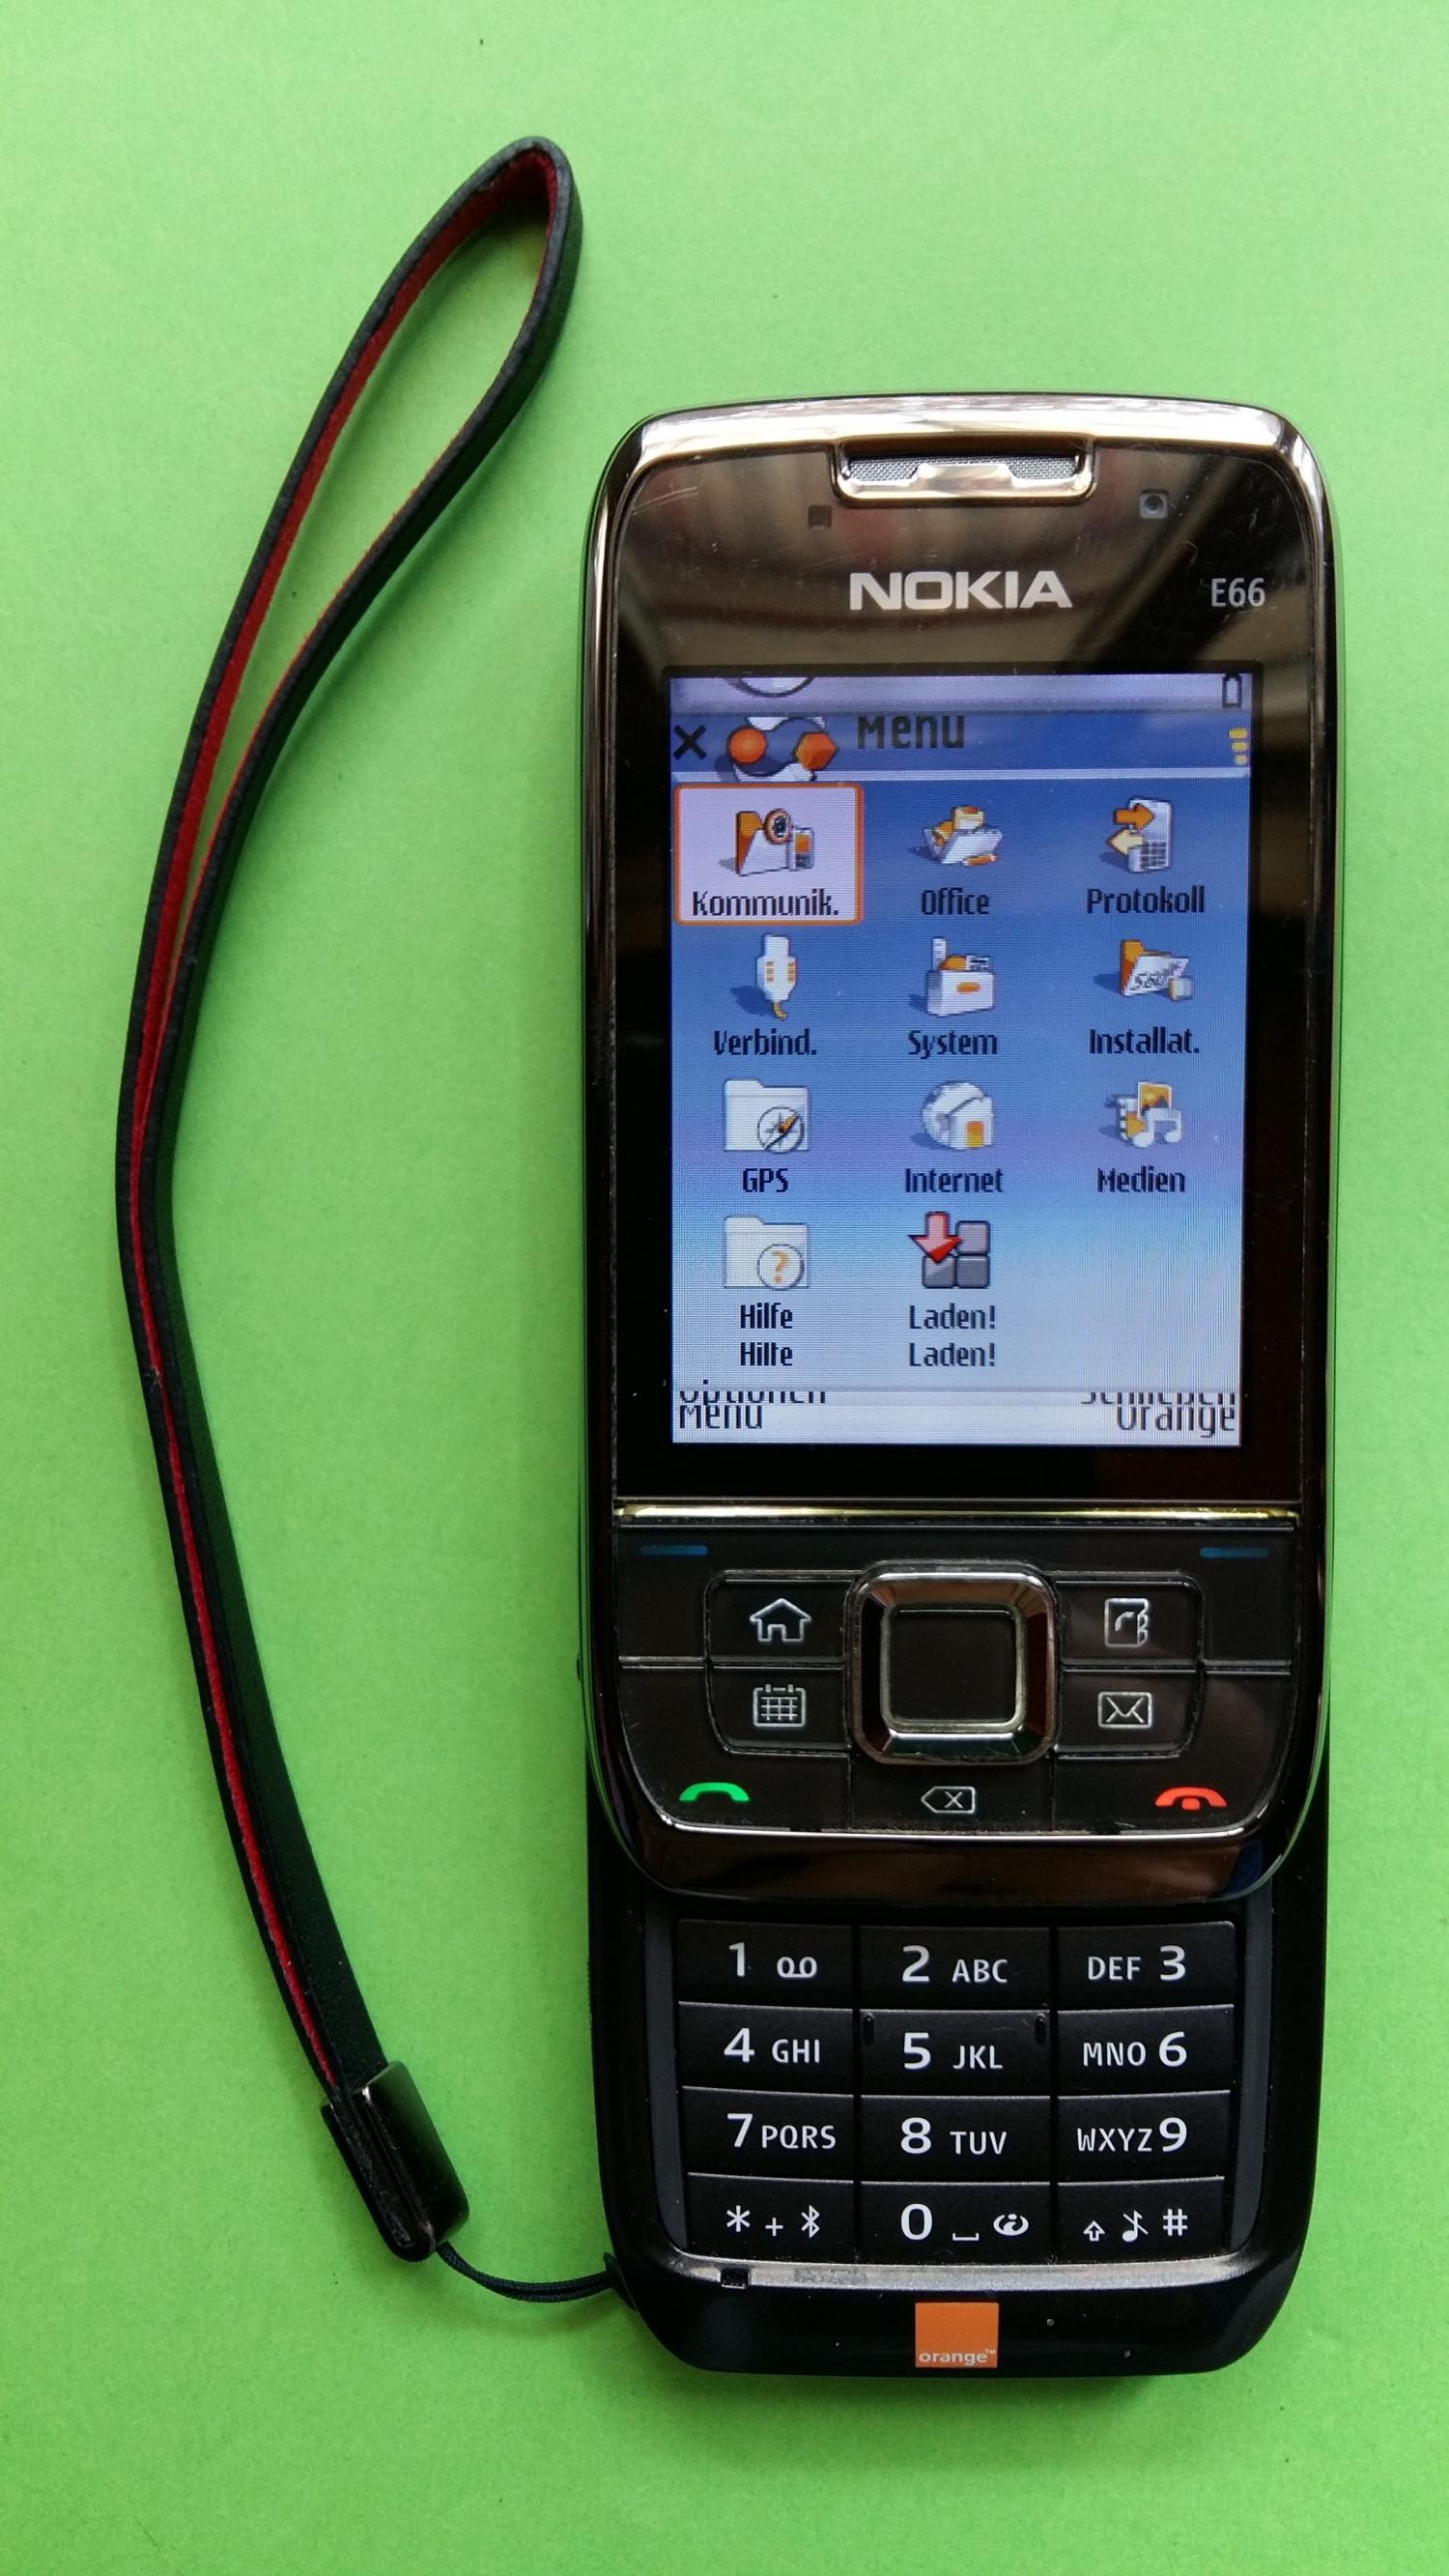 image-7339229-Nokia E66-1 (1)2.jpg